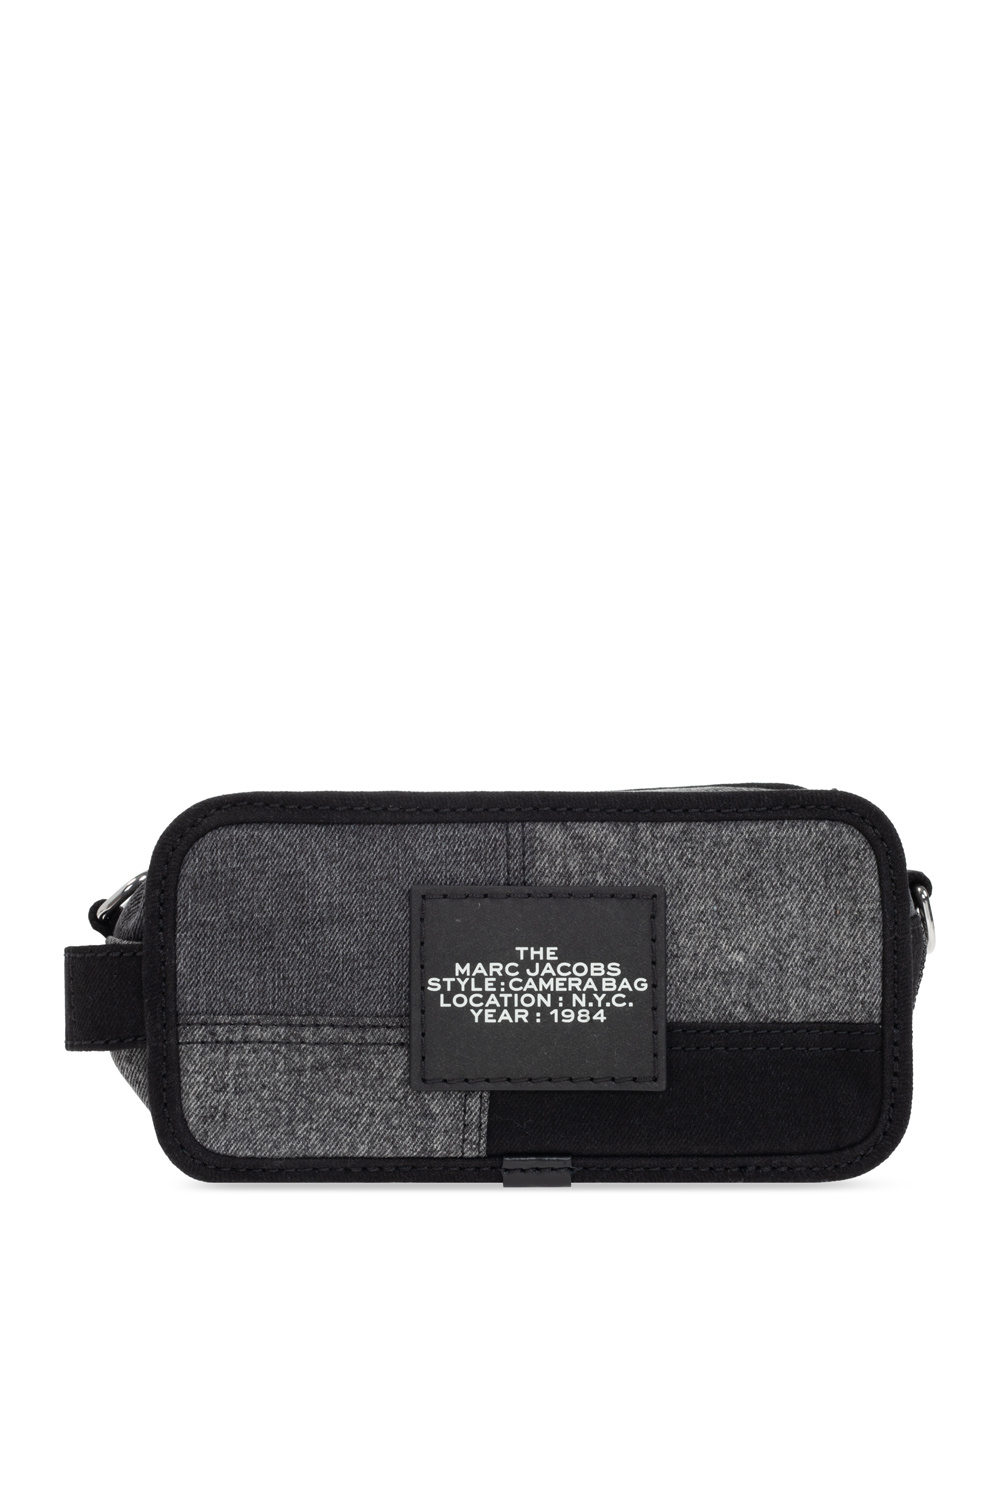 Marc Jacobs ‘The Camera Bag’ shoulder bag